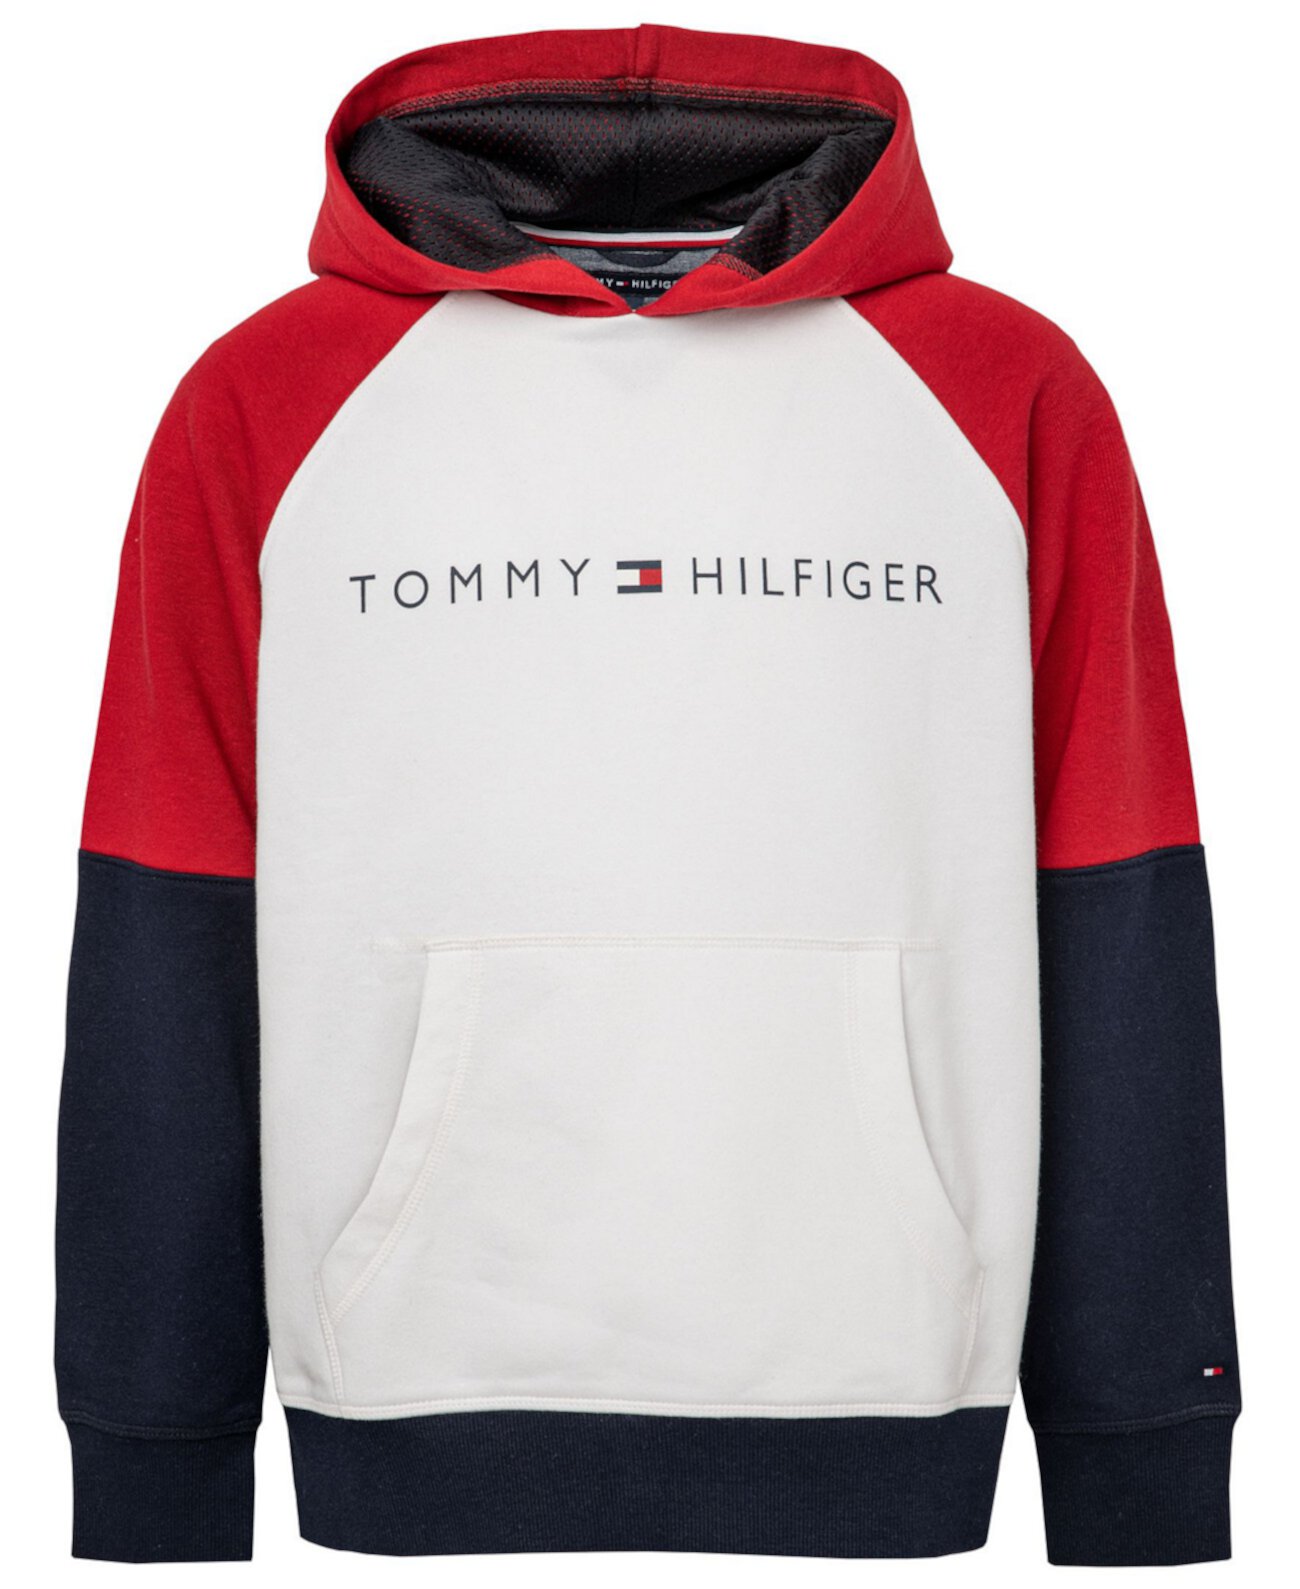 Классический пуловер с капюшоном Little Boys Tommy Hilfiger